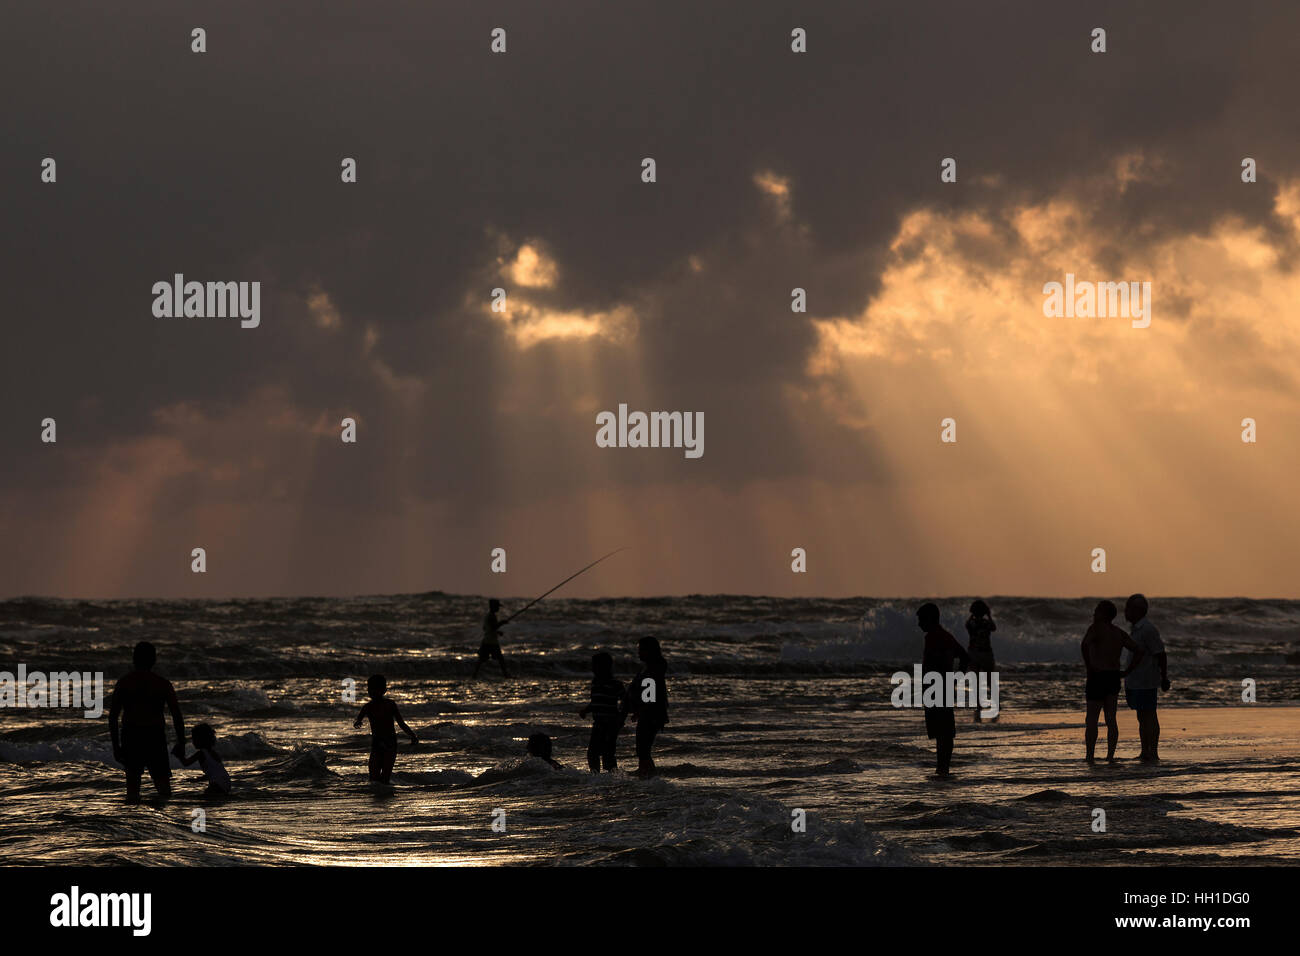 Persone nella retroilluminazione sulla spiaggia, raggi di luce solare, nuvole scure sul mare, Beruwela, provincia occidentale, Sri Lanka Foto Stock